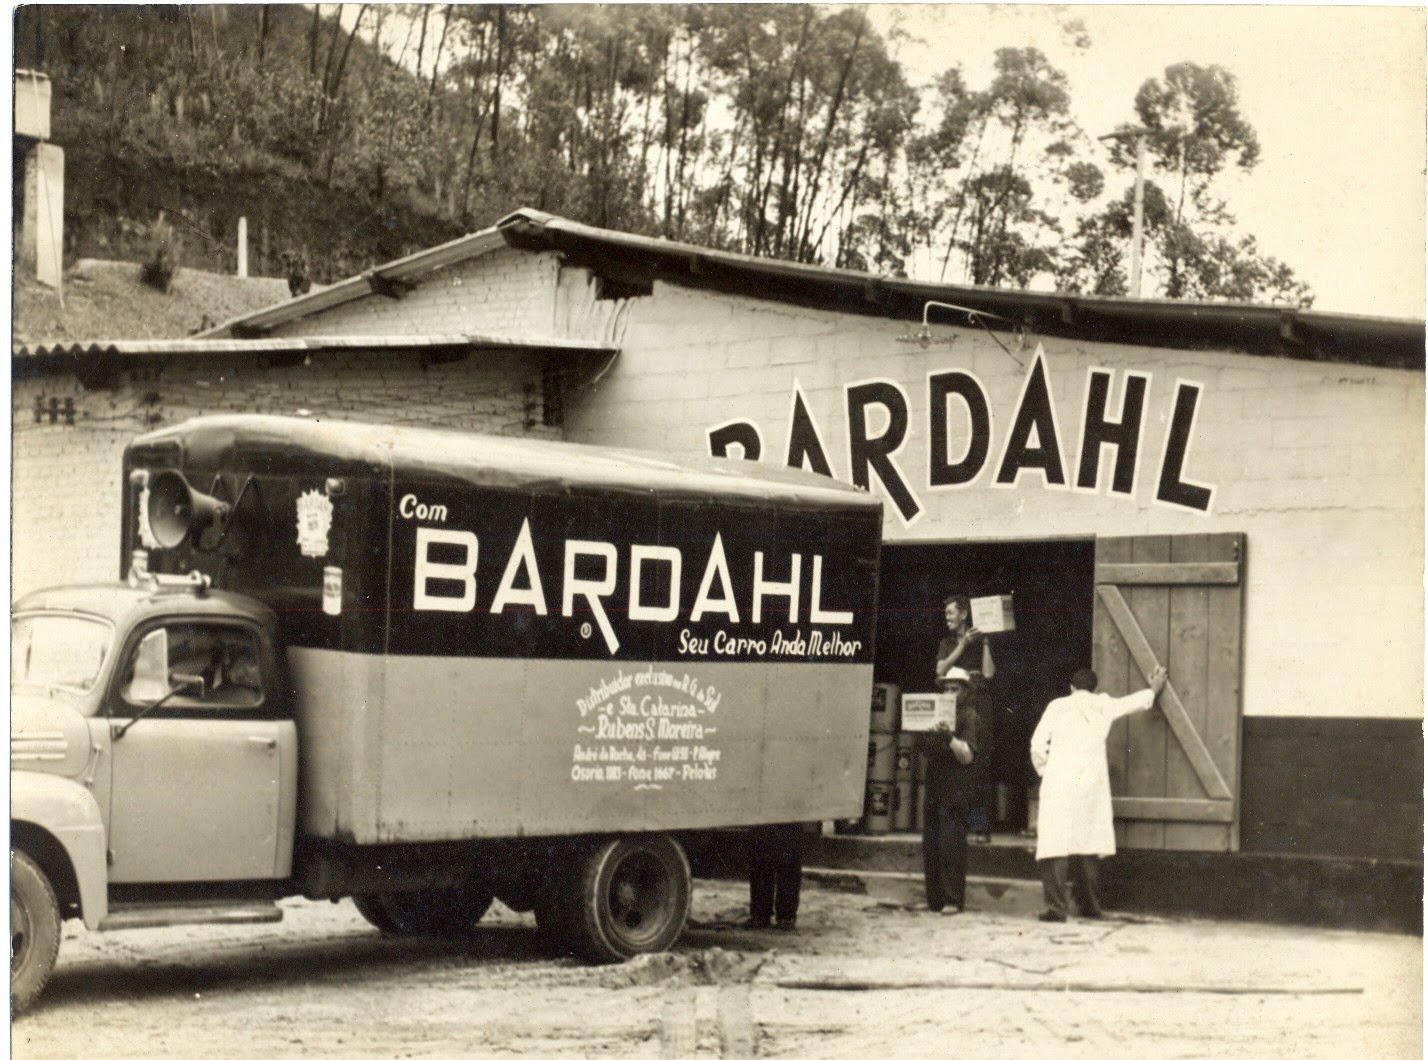 Bardahl completa 60 anos de Brasil e aposta em knowhow e